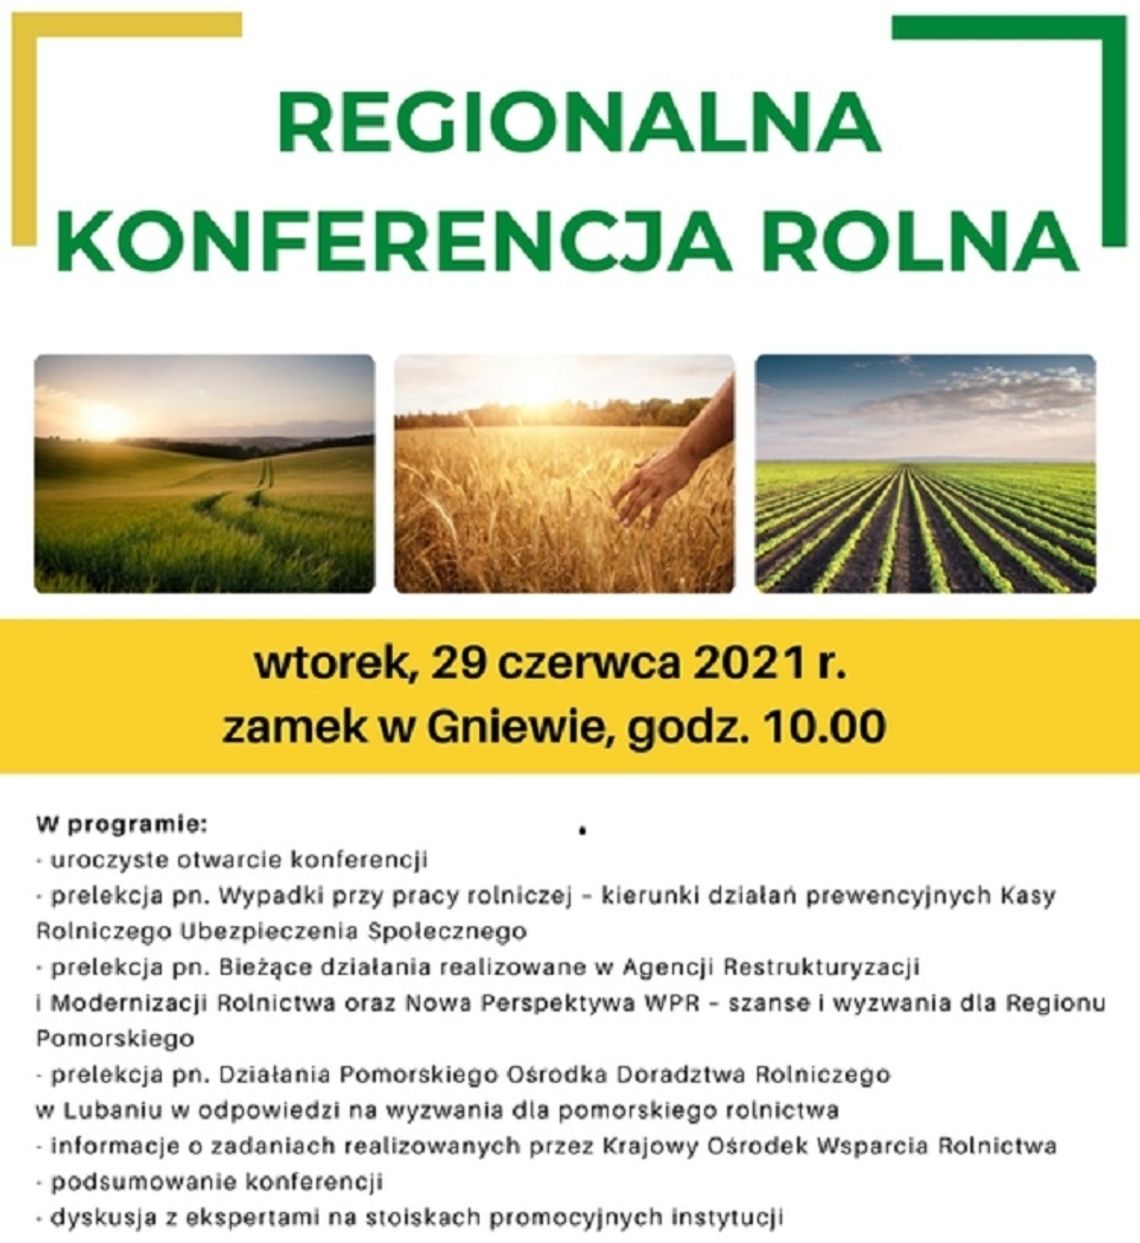 Regionalna Konferencja Rolna w Gniewie już 29 czerwca